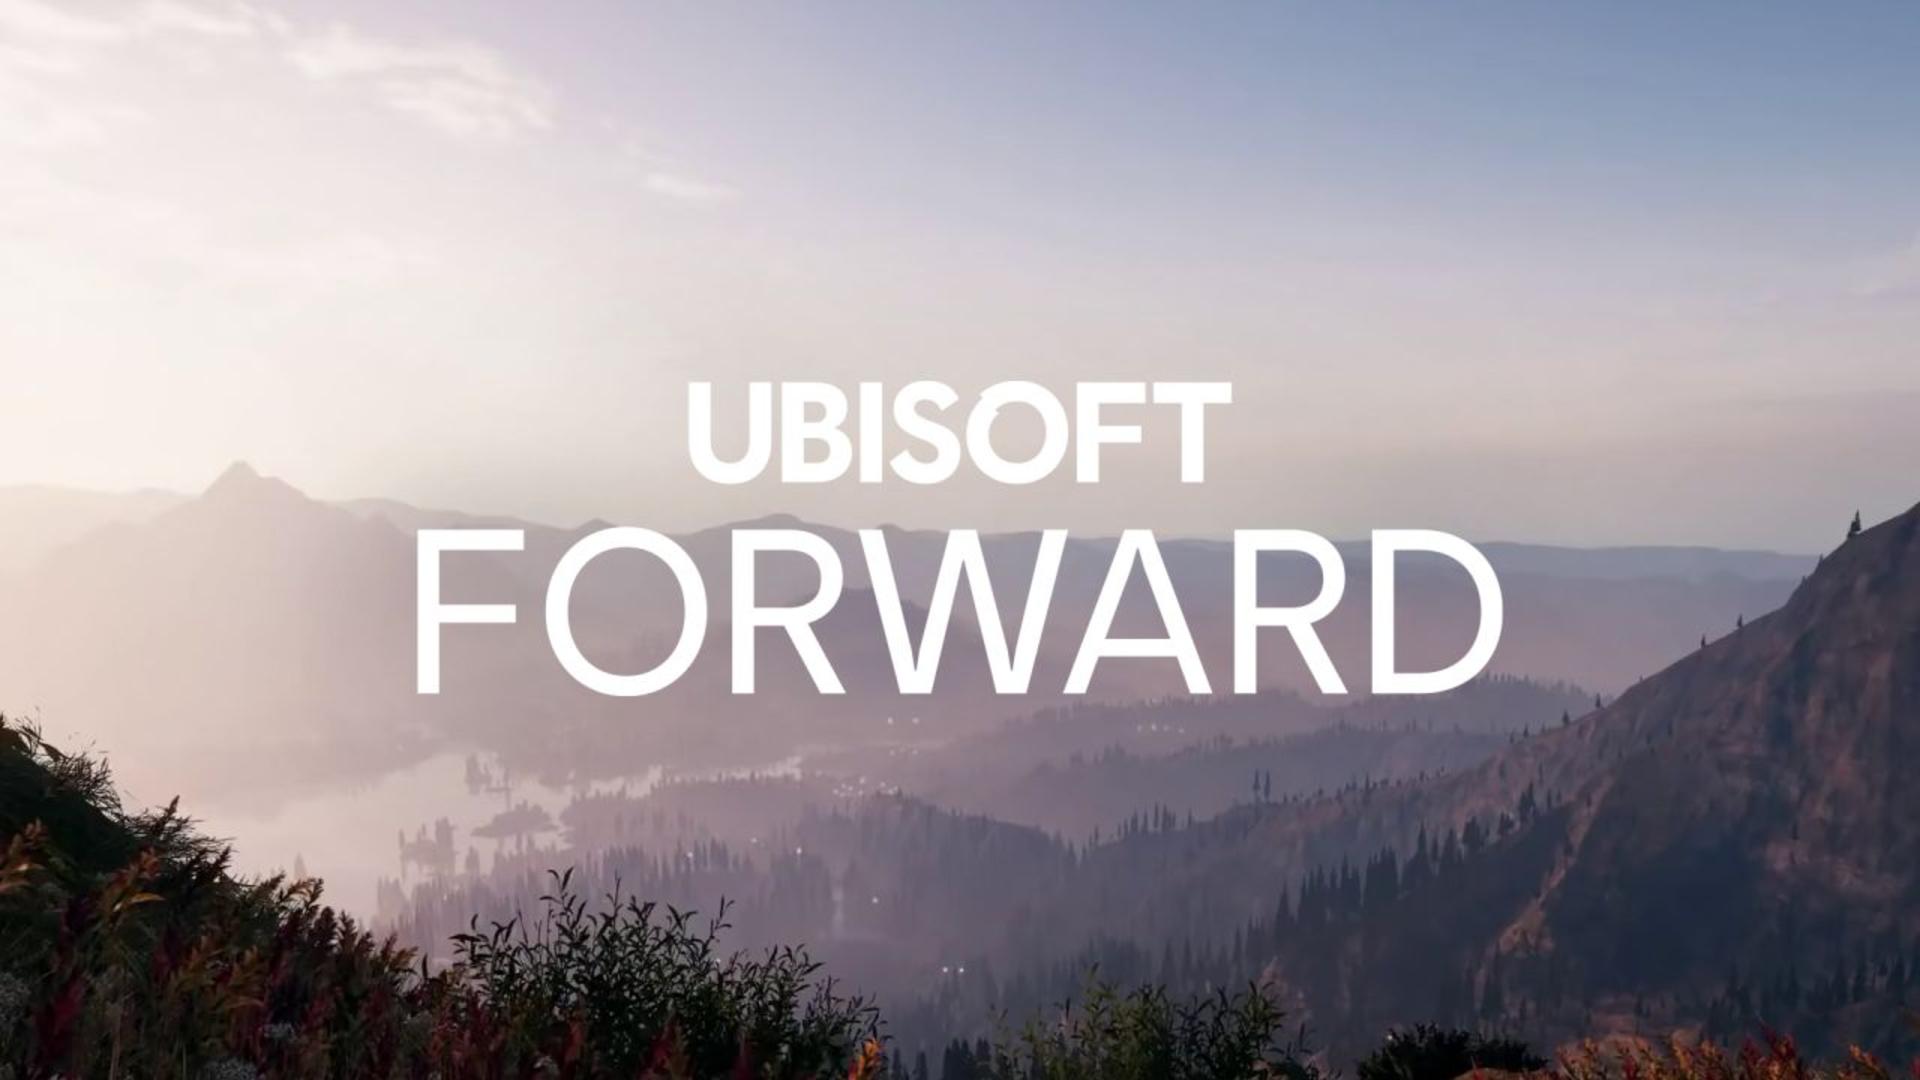 Ubisoft forward será o evento online em julho | f19f21a1 ubisoft forward | horror | ubisoft forward horror